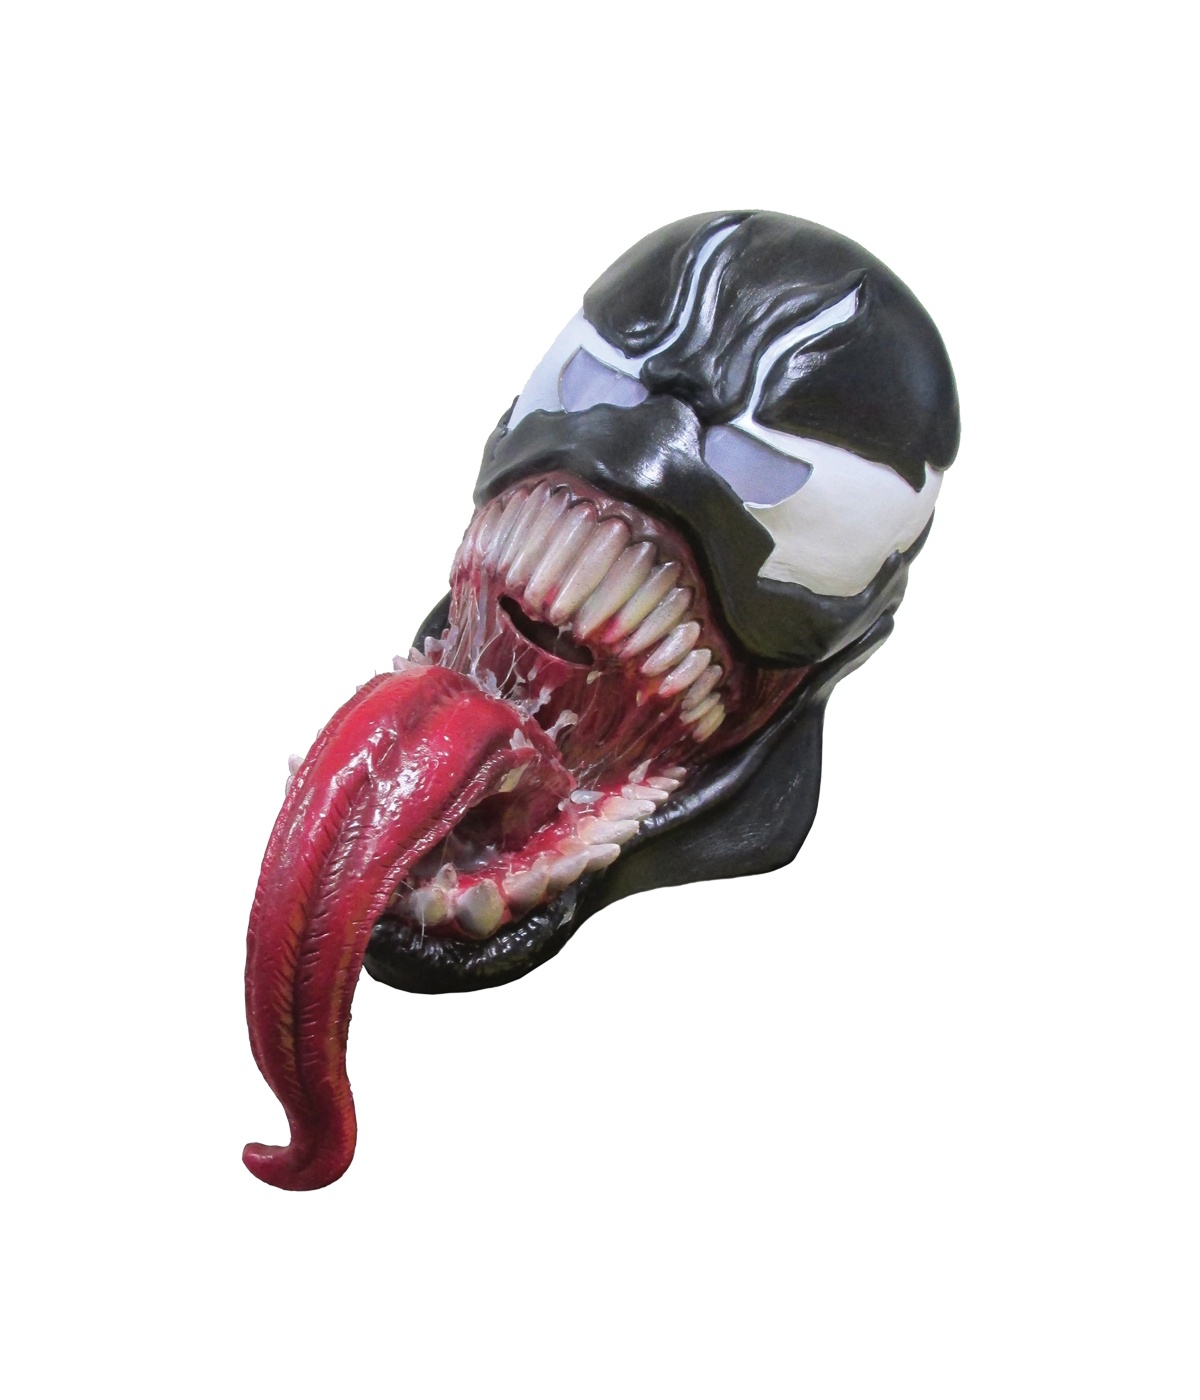 Venom Mask